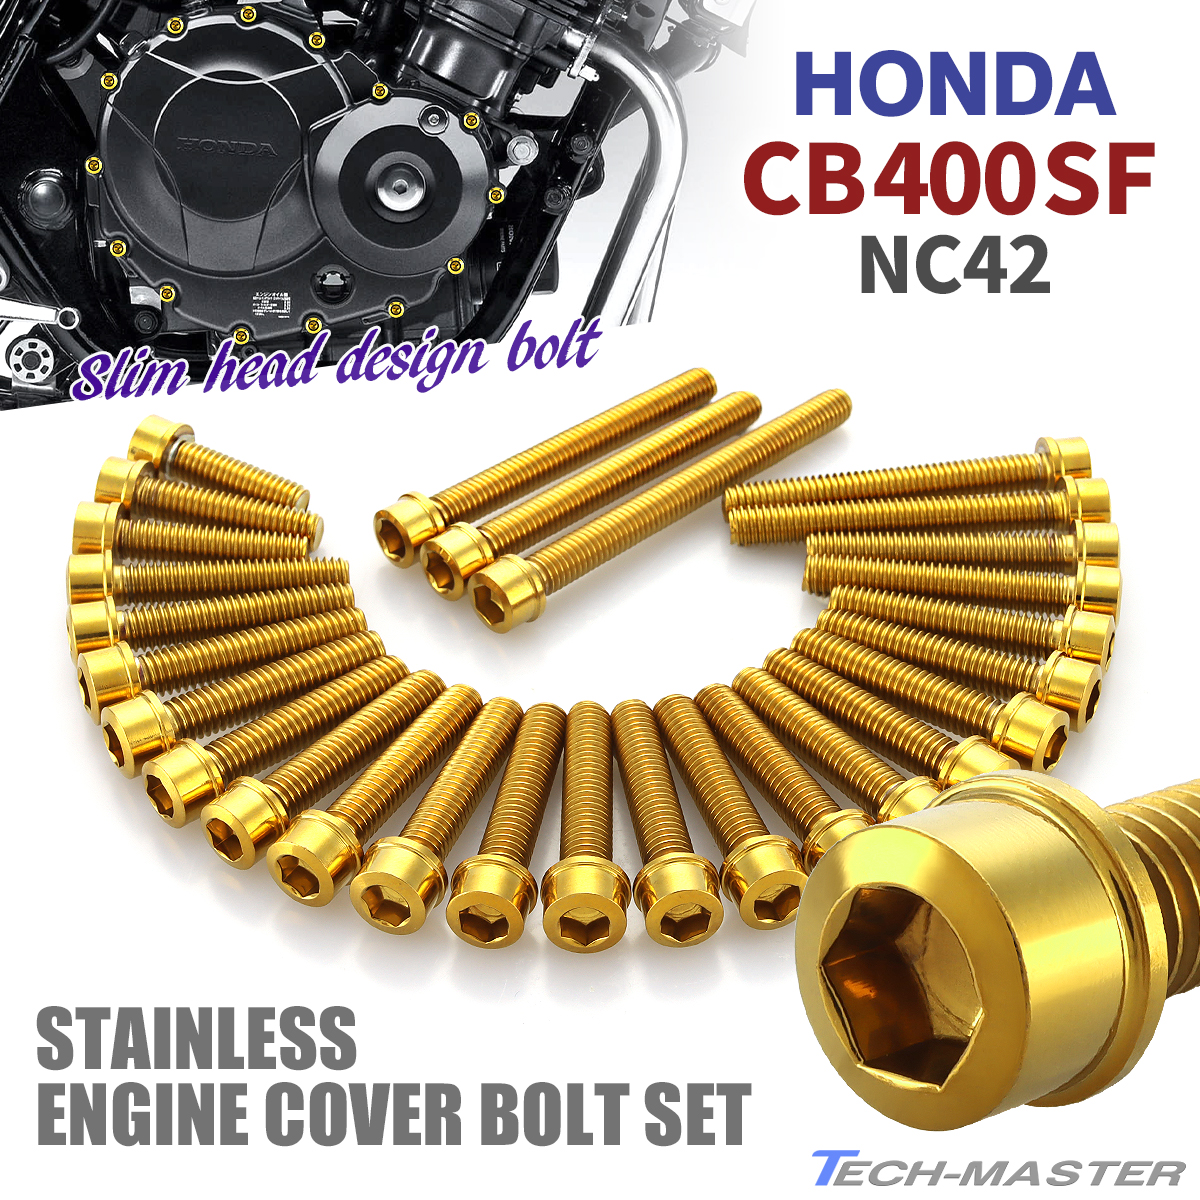 CB400SF NC42 крышка двигателя блок цилиндров болт 28 шт. комплект из нержавеющей стали Honda car для Gold цвет TB6392